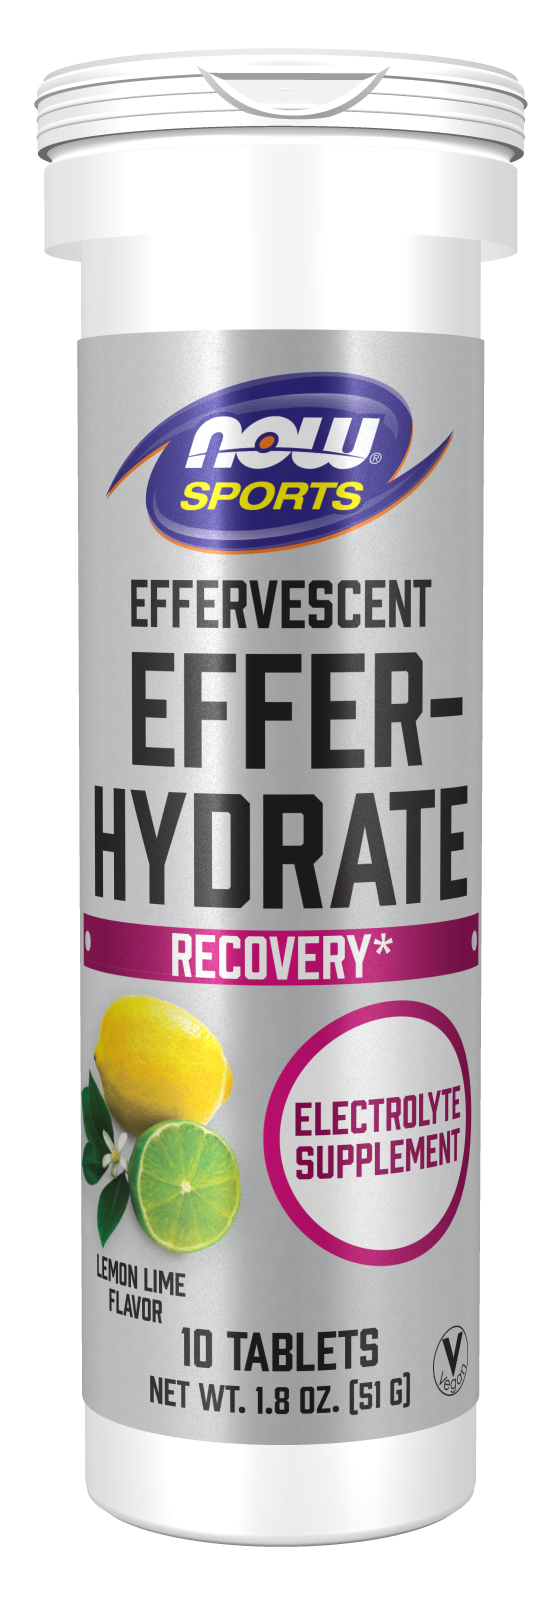 Effer-Hydrate Effervescent Lemon Lime - 10 Tablets/Tube Front